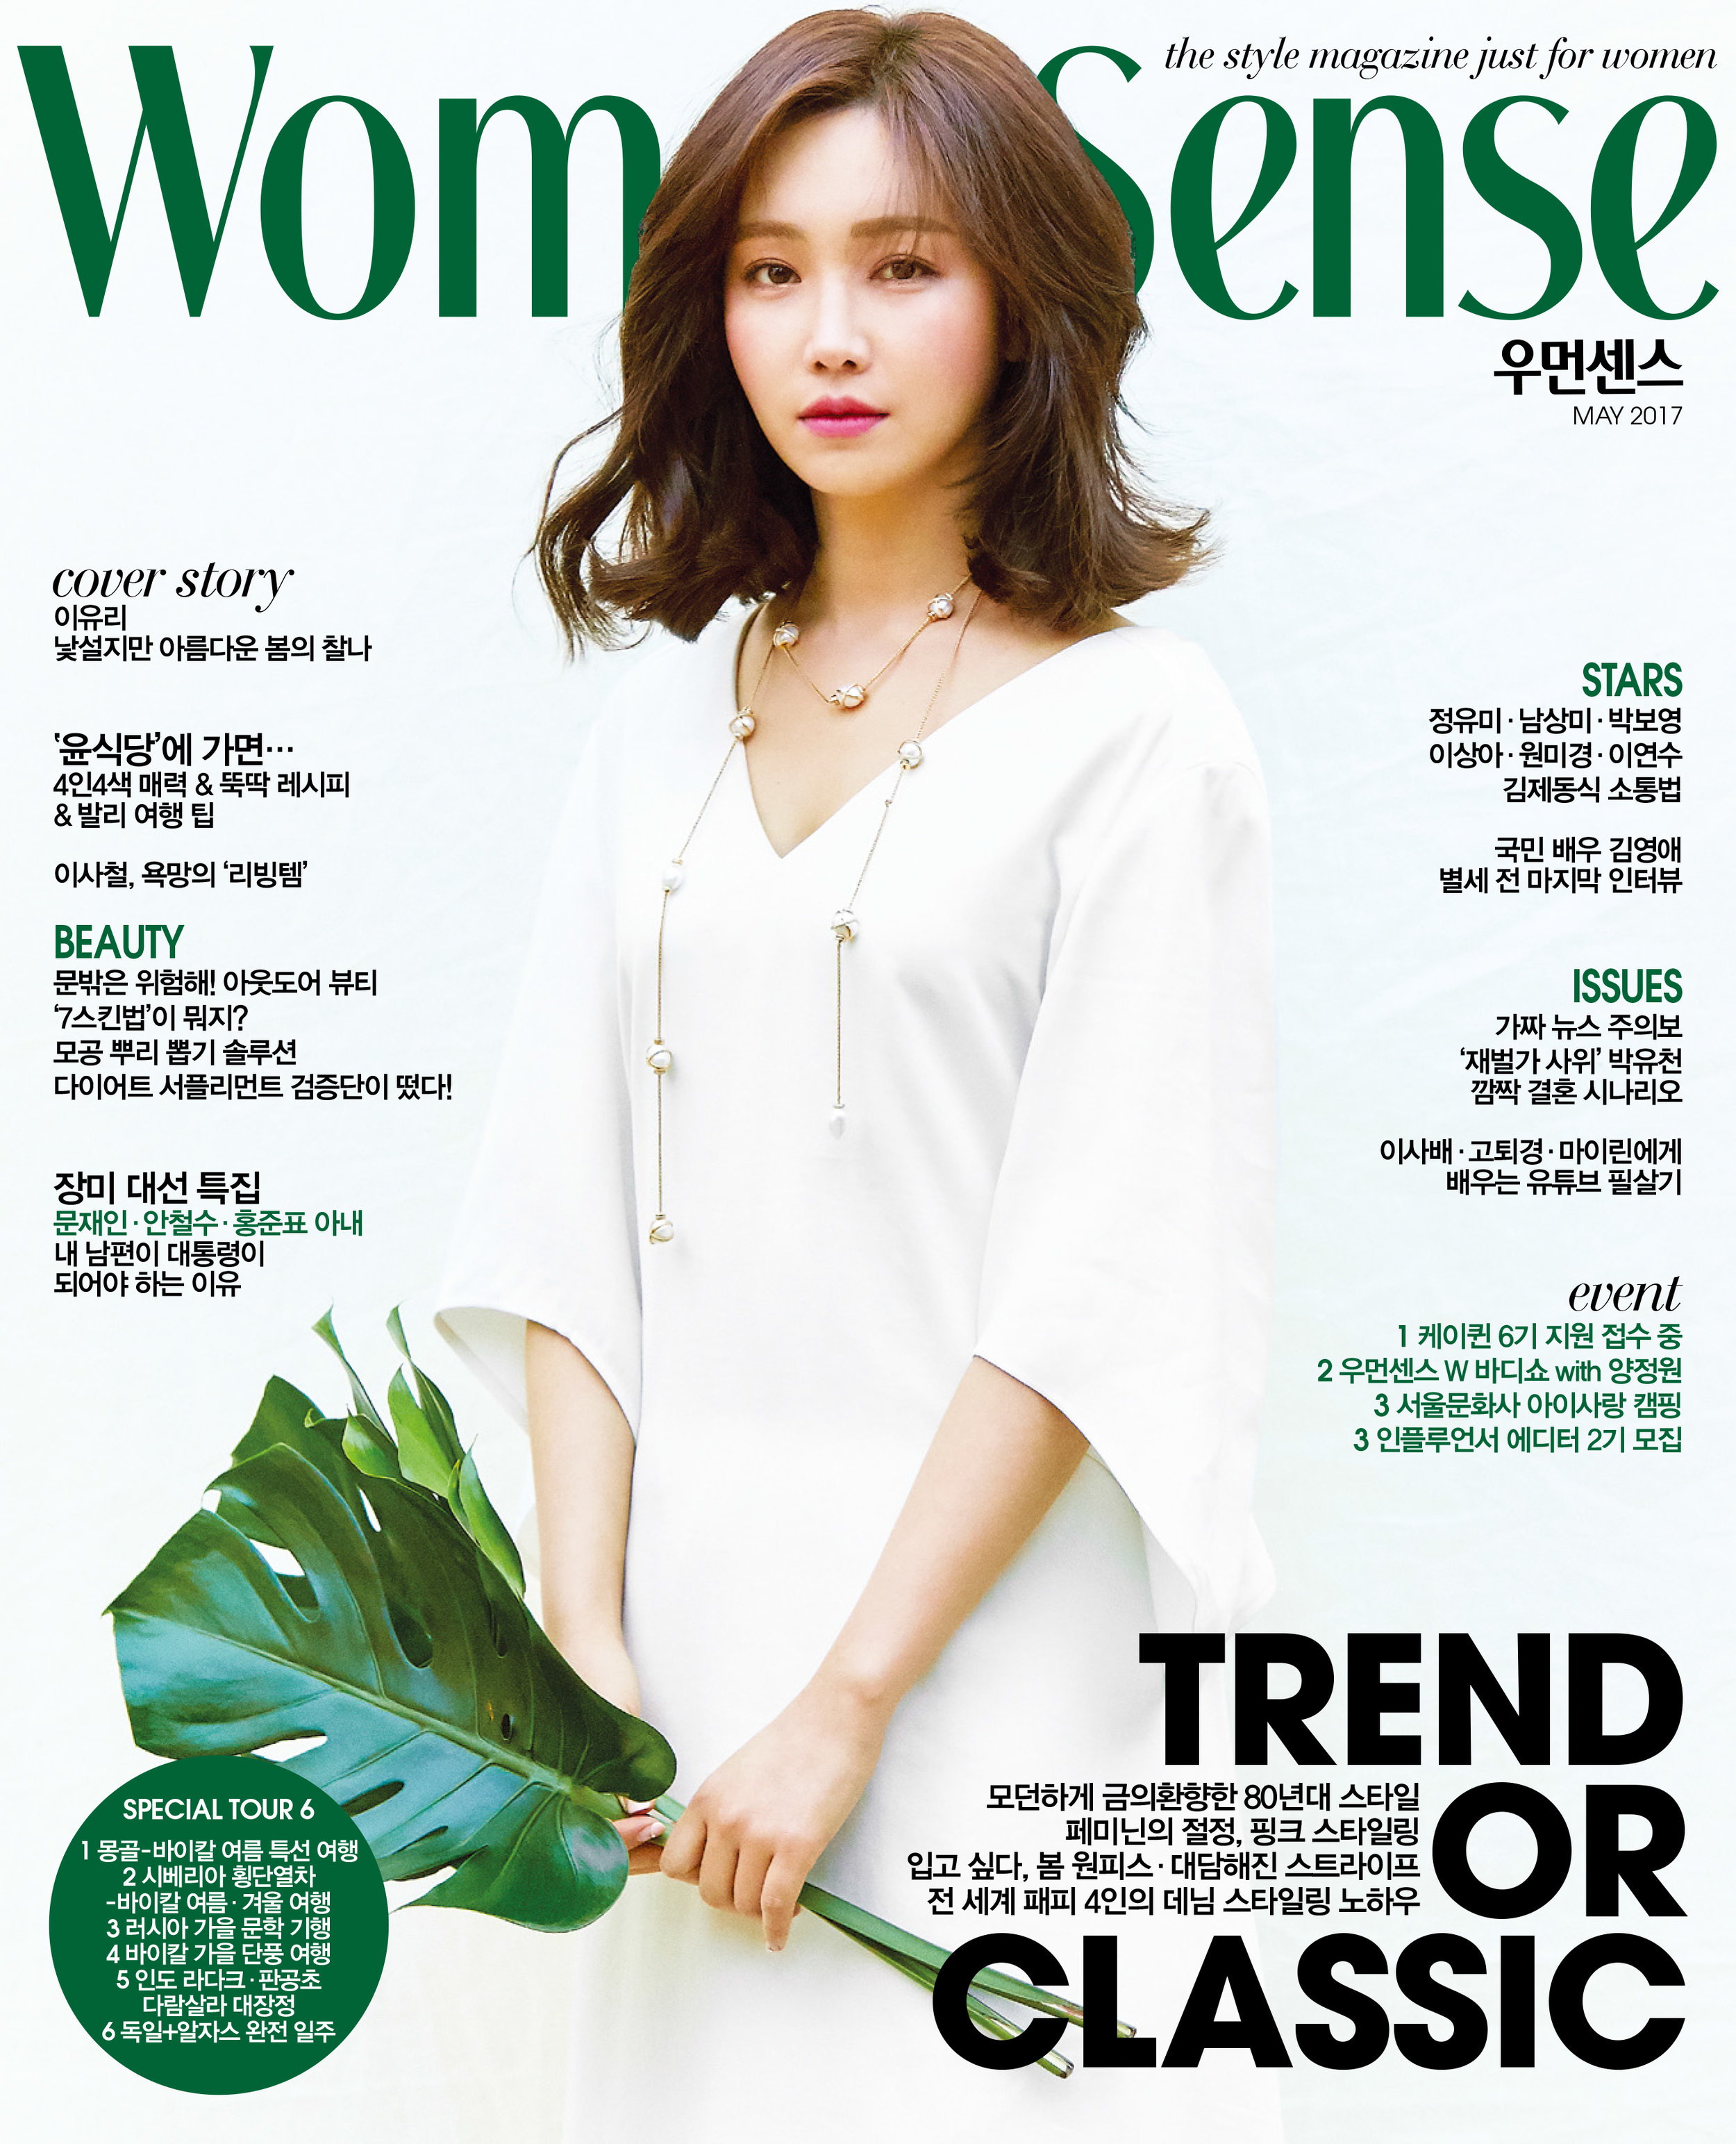 Woman Sense May 2017 Cover